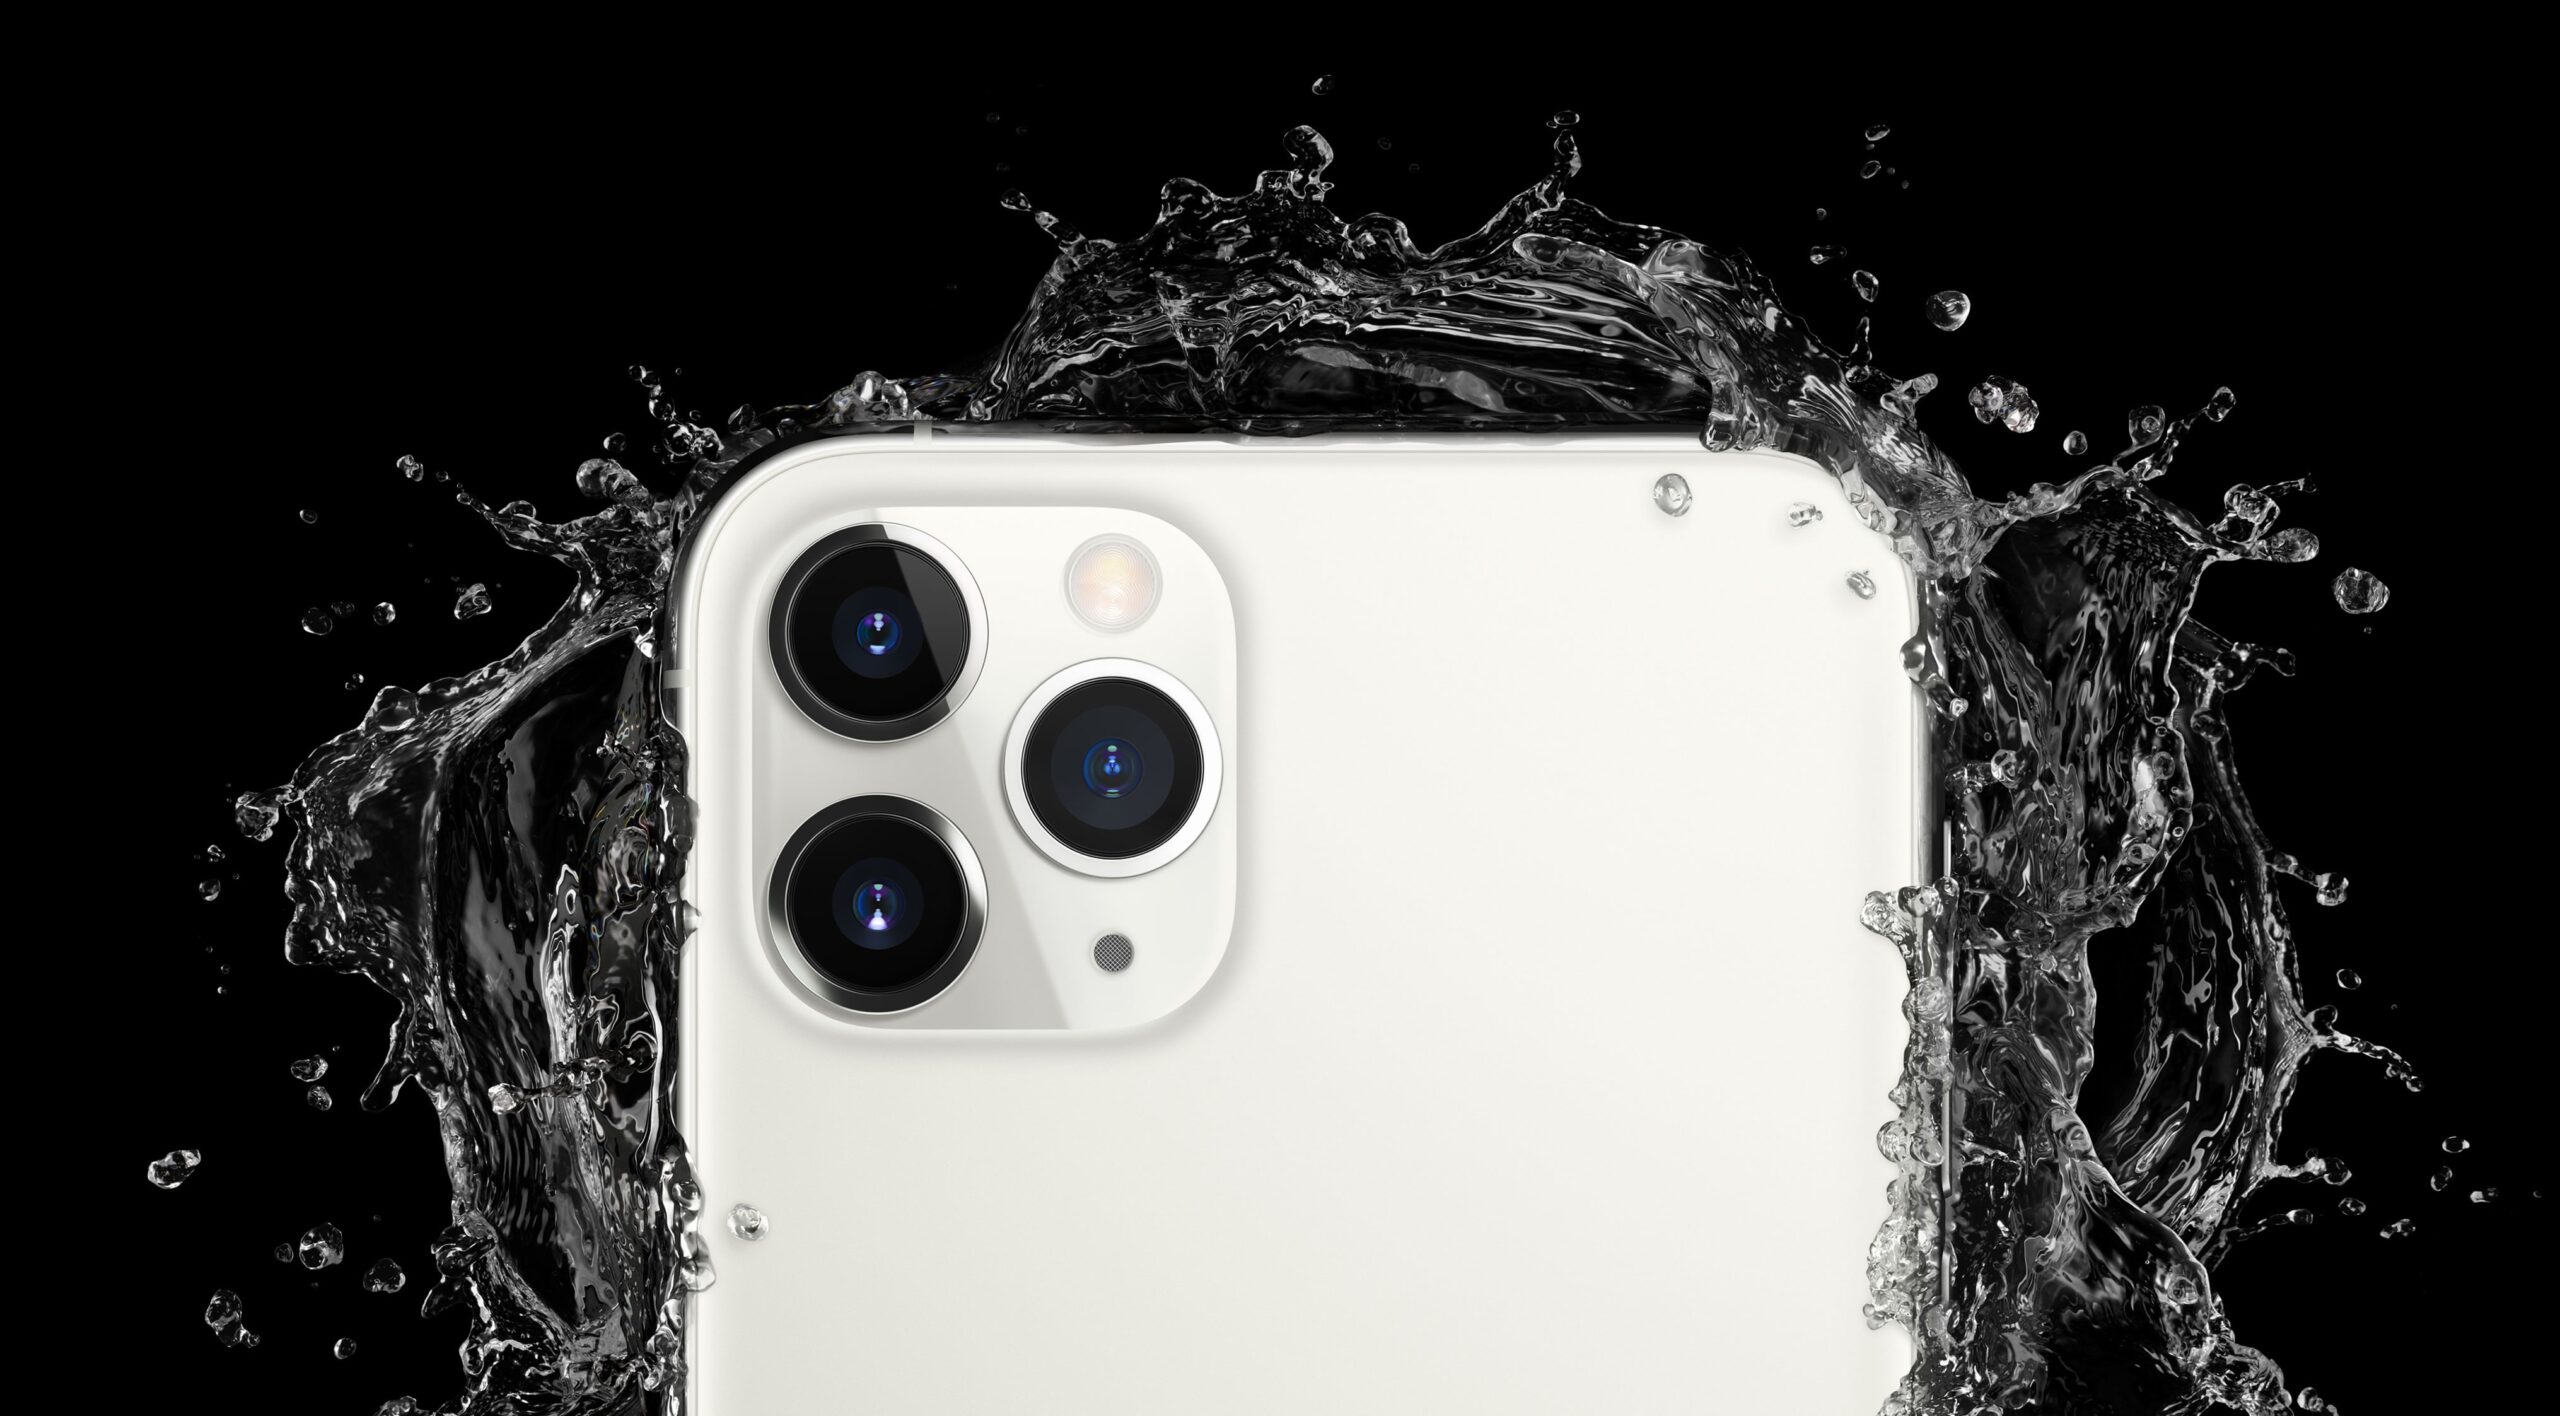 iPhone 11 Pro Max prateado com água explodindo à sua volta